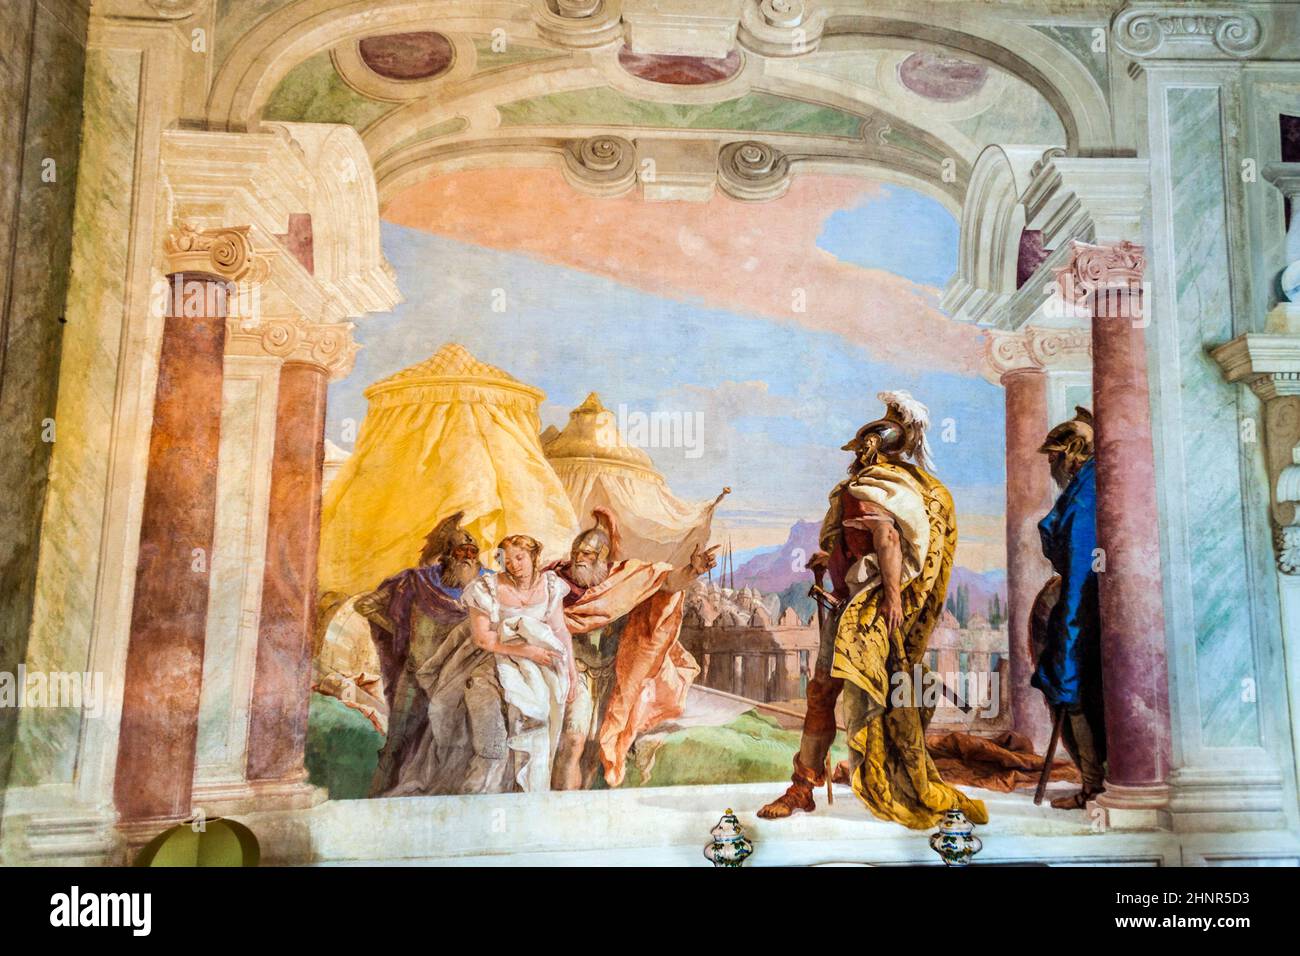 frescos from Giovanni Battista Tiepolo in Vicenza Stock Photo